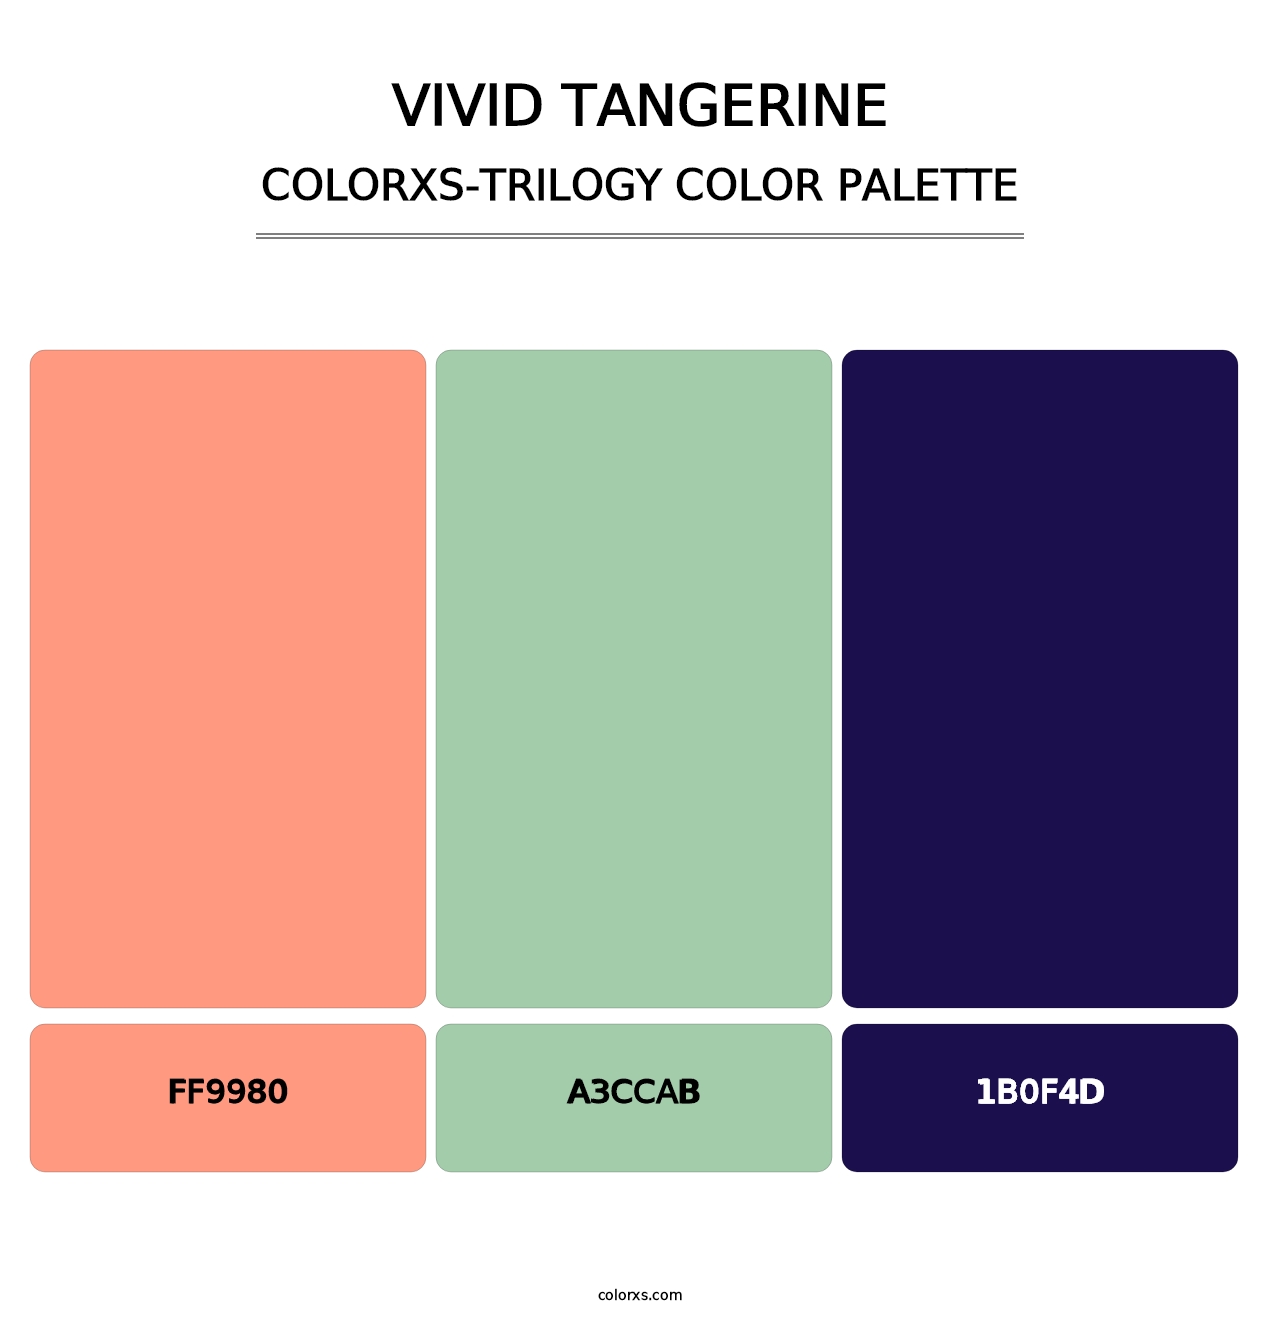 Vivid Tangerine - Colorxs Trilogy Palette